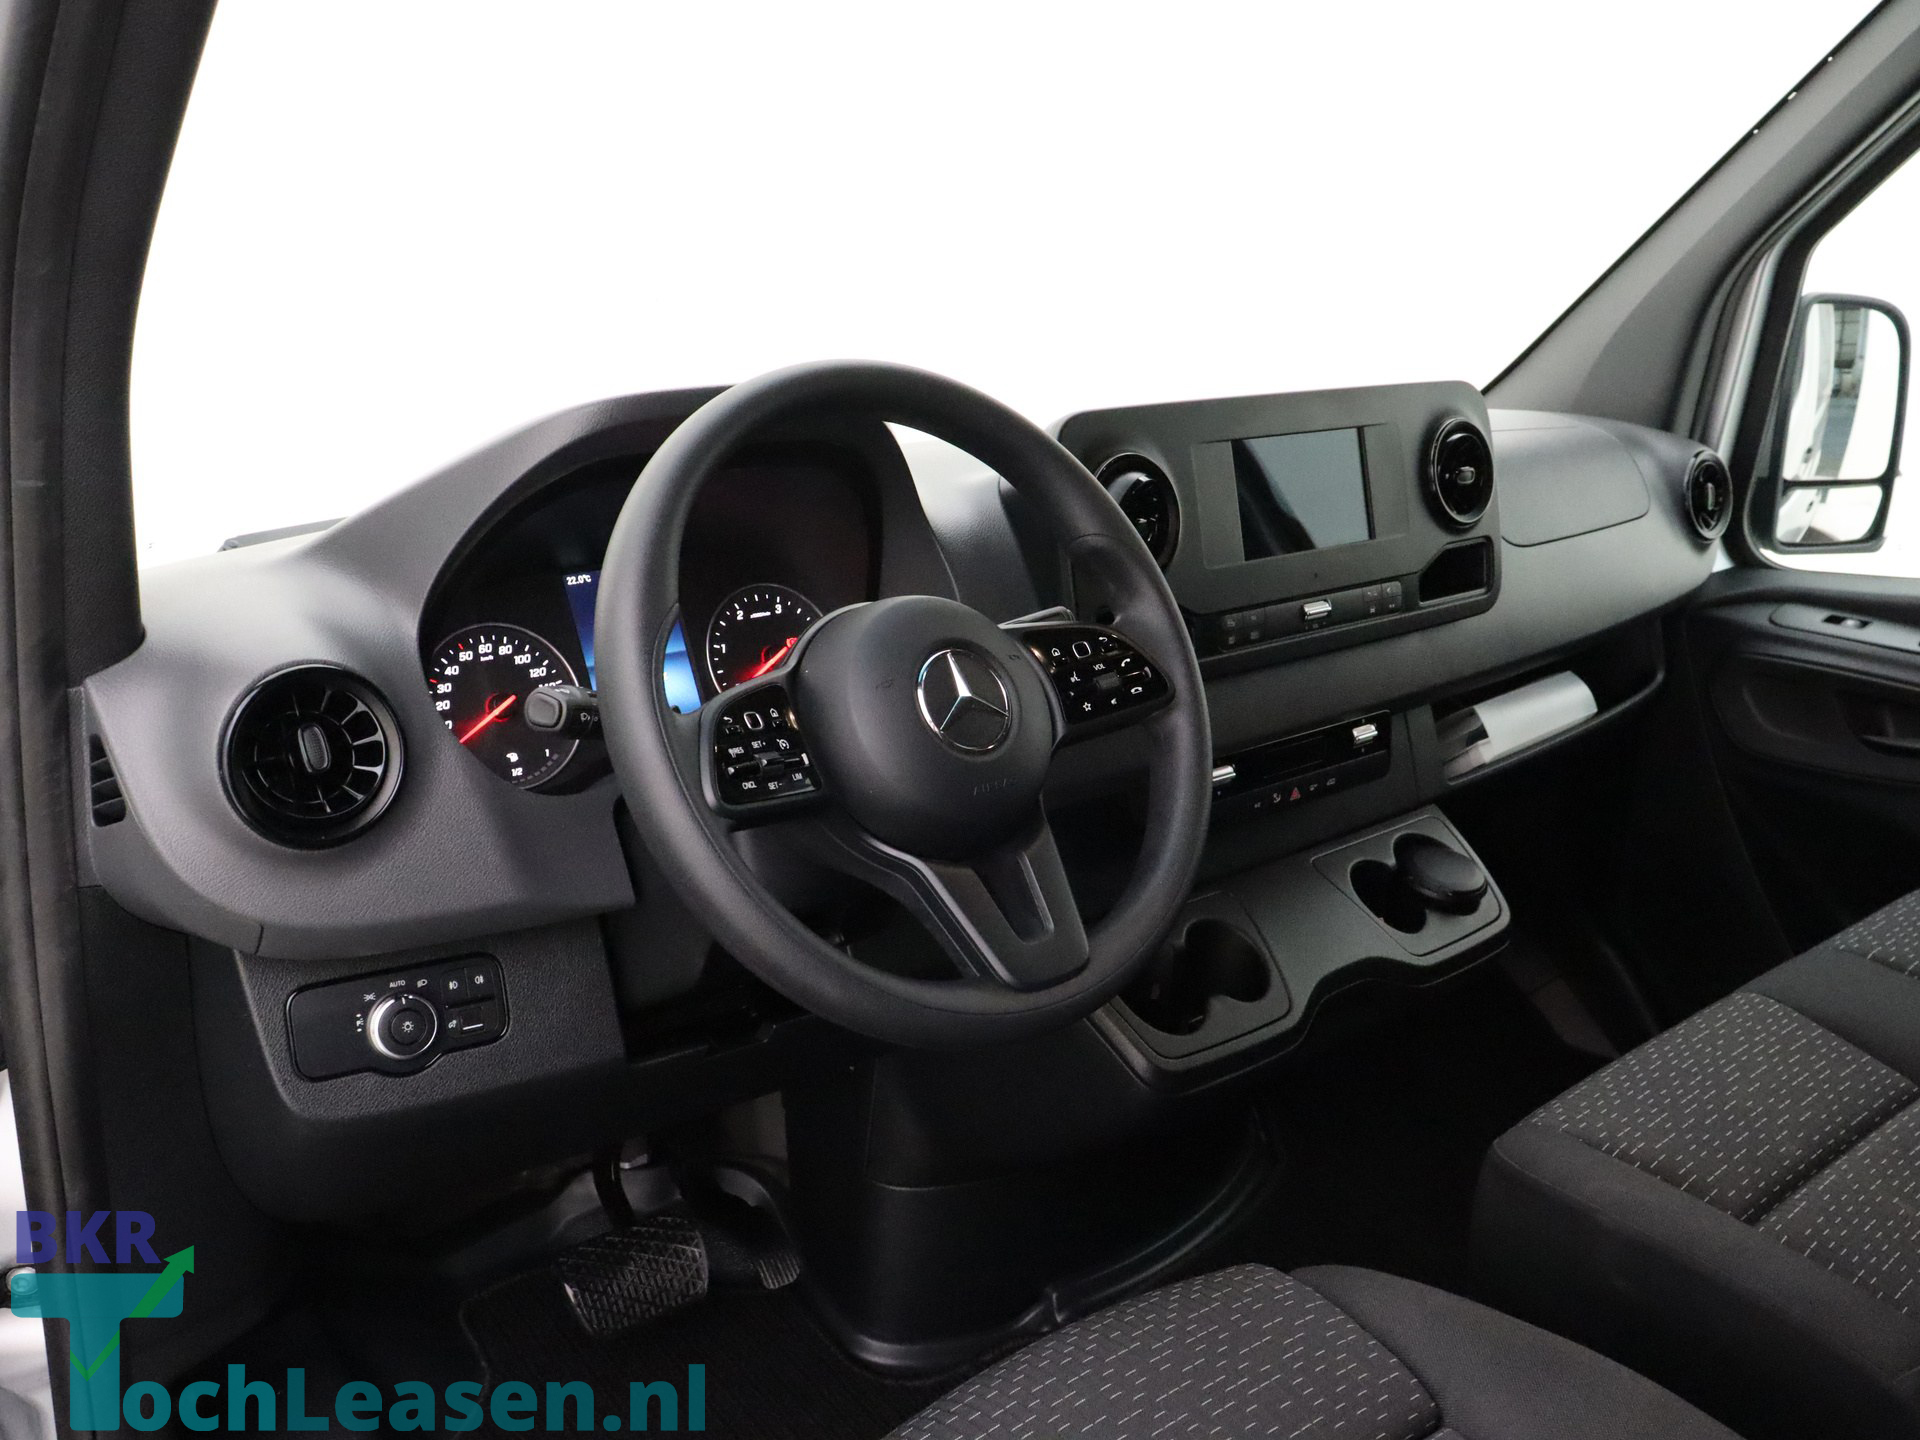 BKR toch leasen - Mercedes-Benz Sprinter - Zilver 4